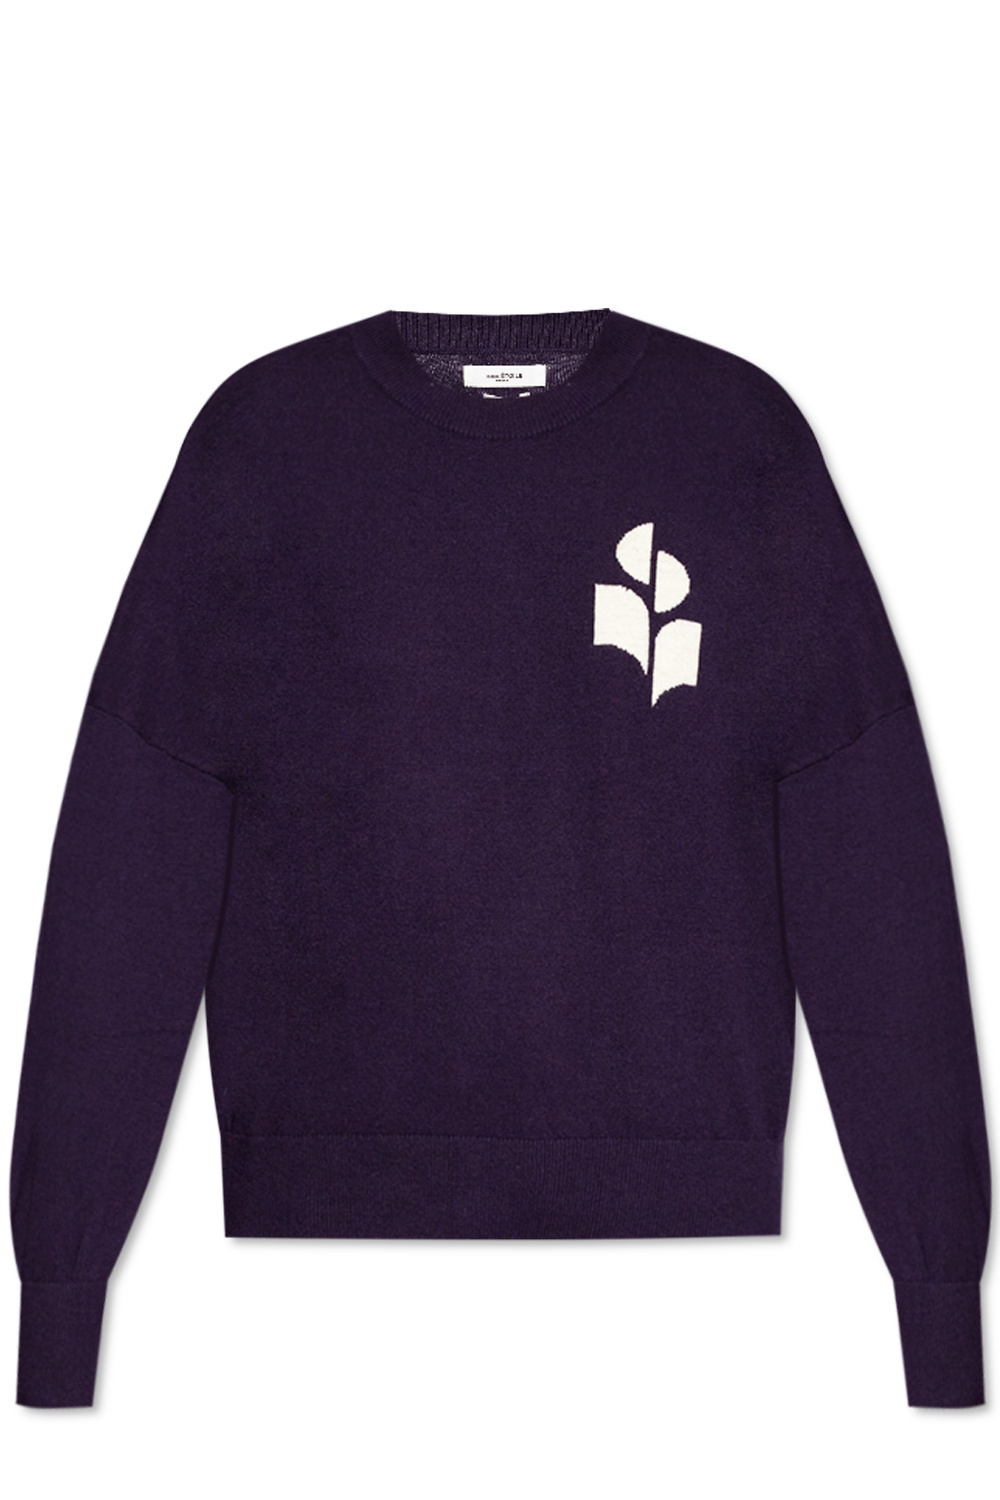 Isabel Marant Etoile ‘Marisans’ sweater with logo